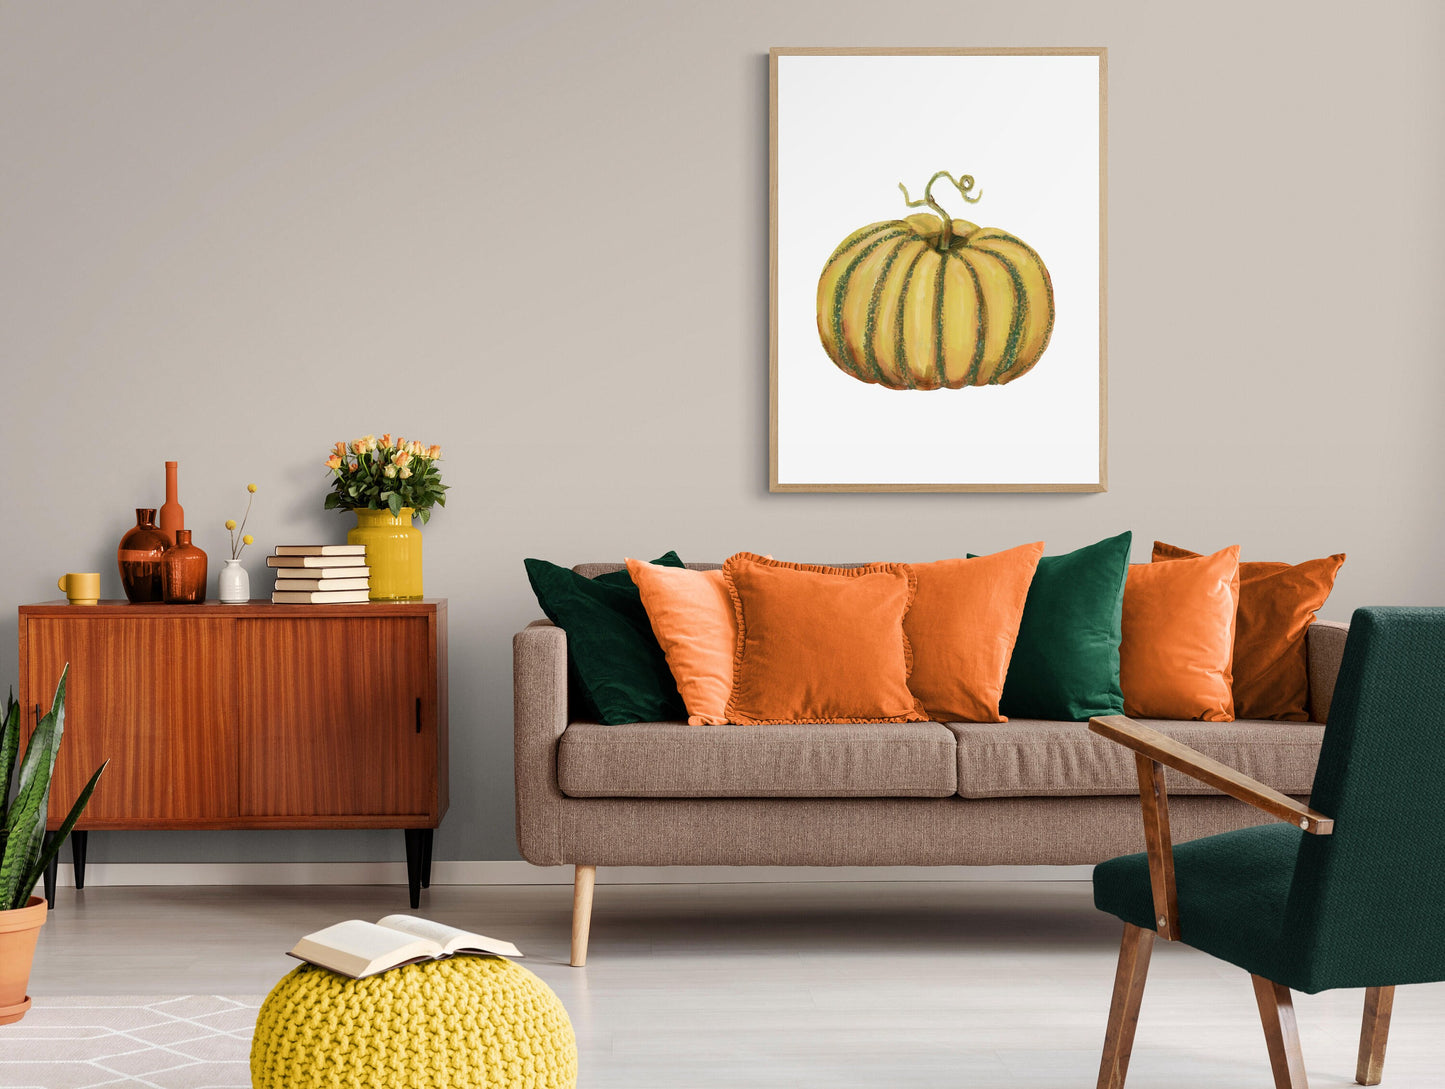 Pumpkin Print, Halloween Pumpkin Painting, Fall Decor, Living Room Home Art, Holiday Wall Art, Yellow Pumpkin Illustration, Autumn Wall Art